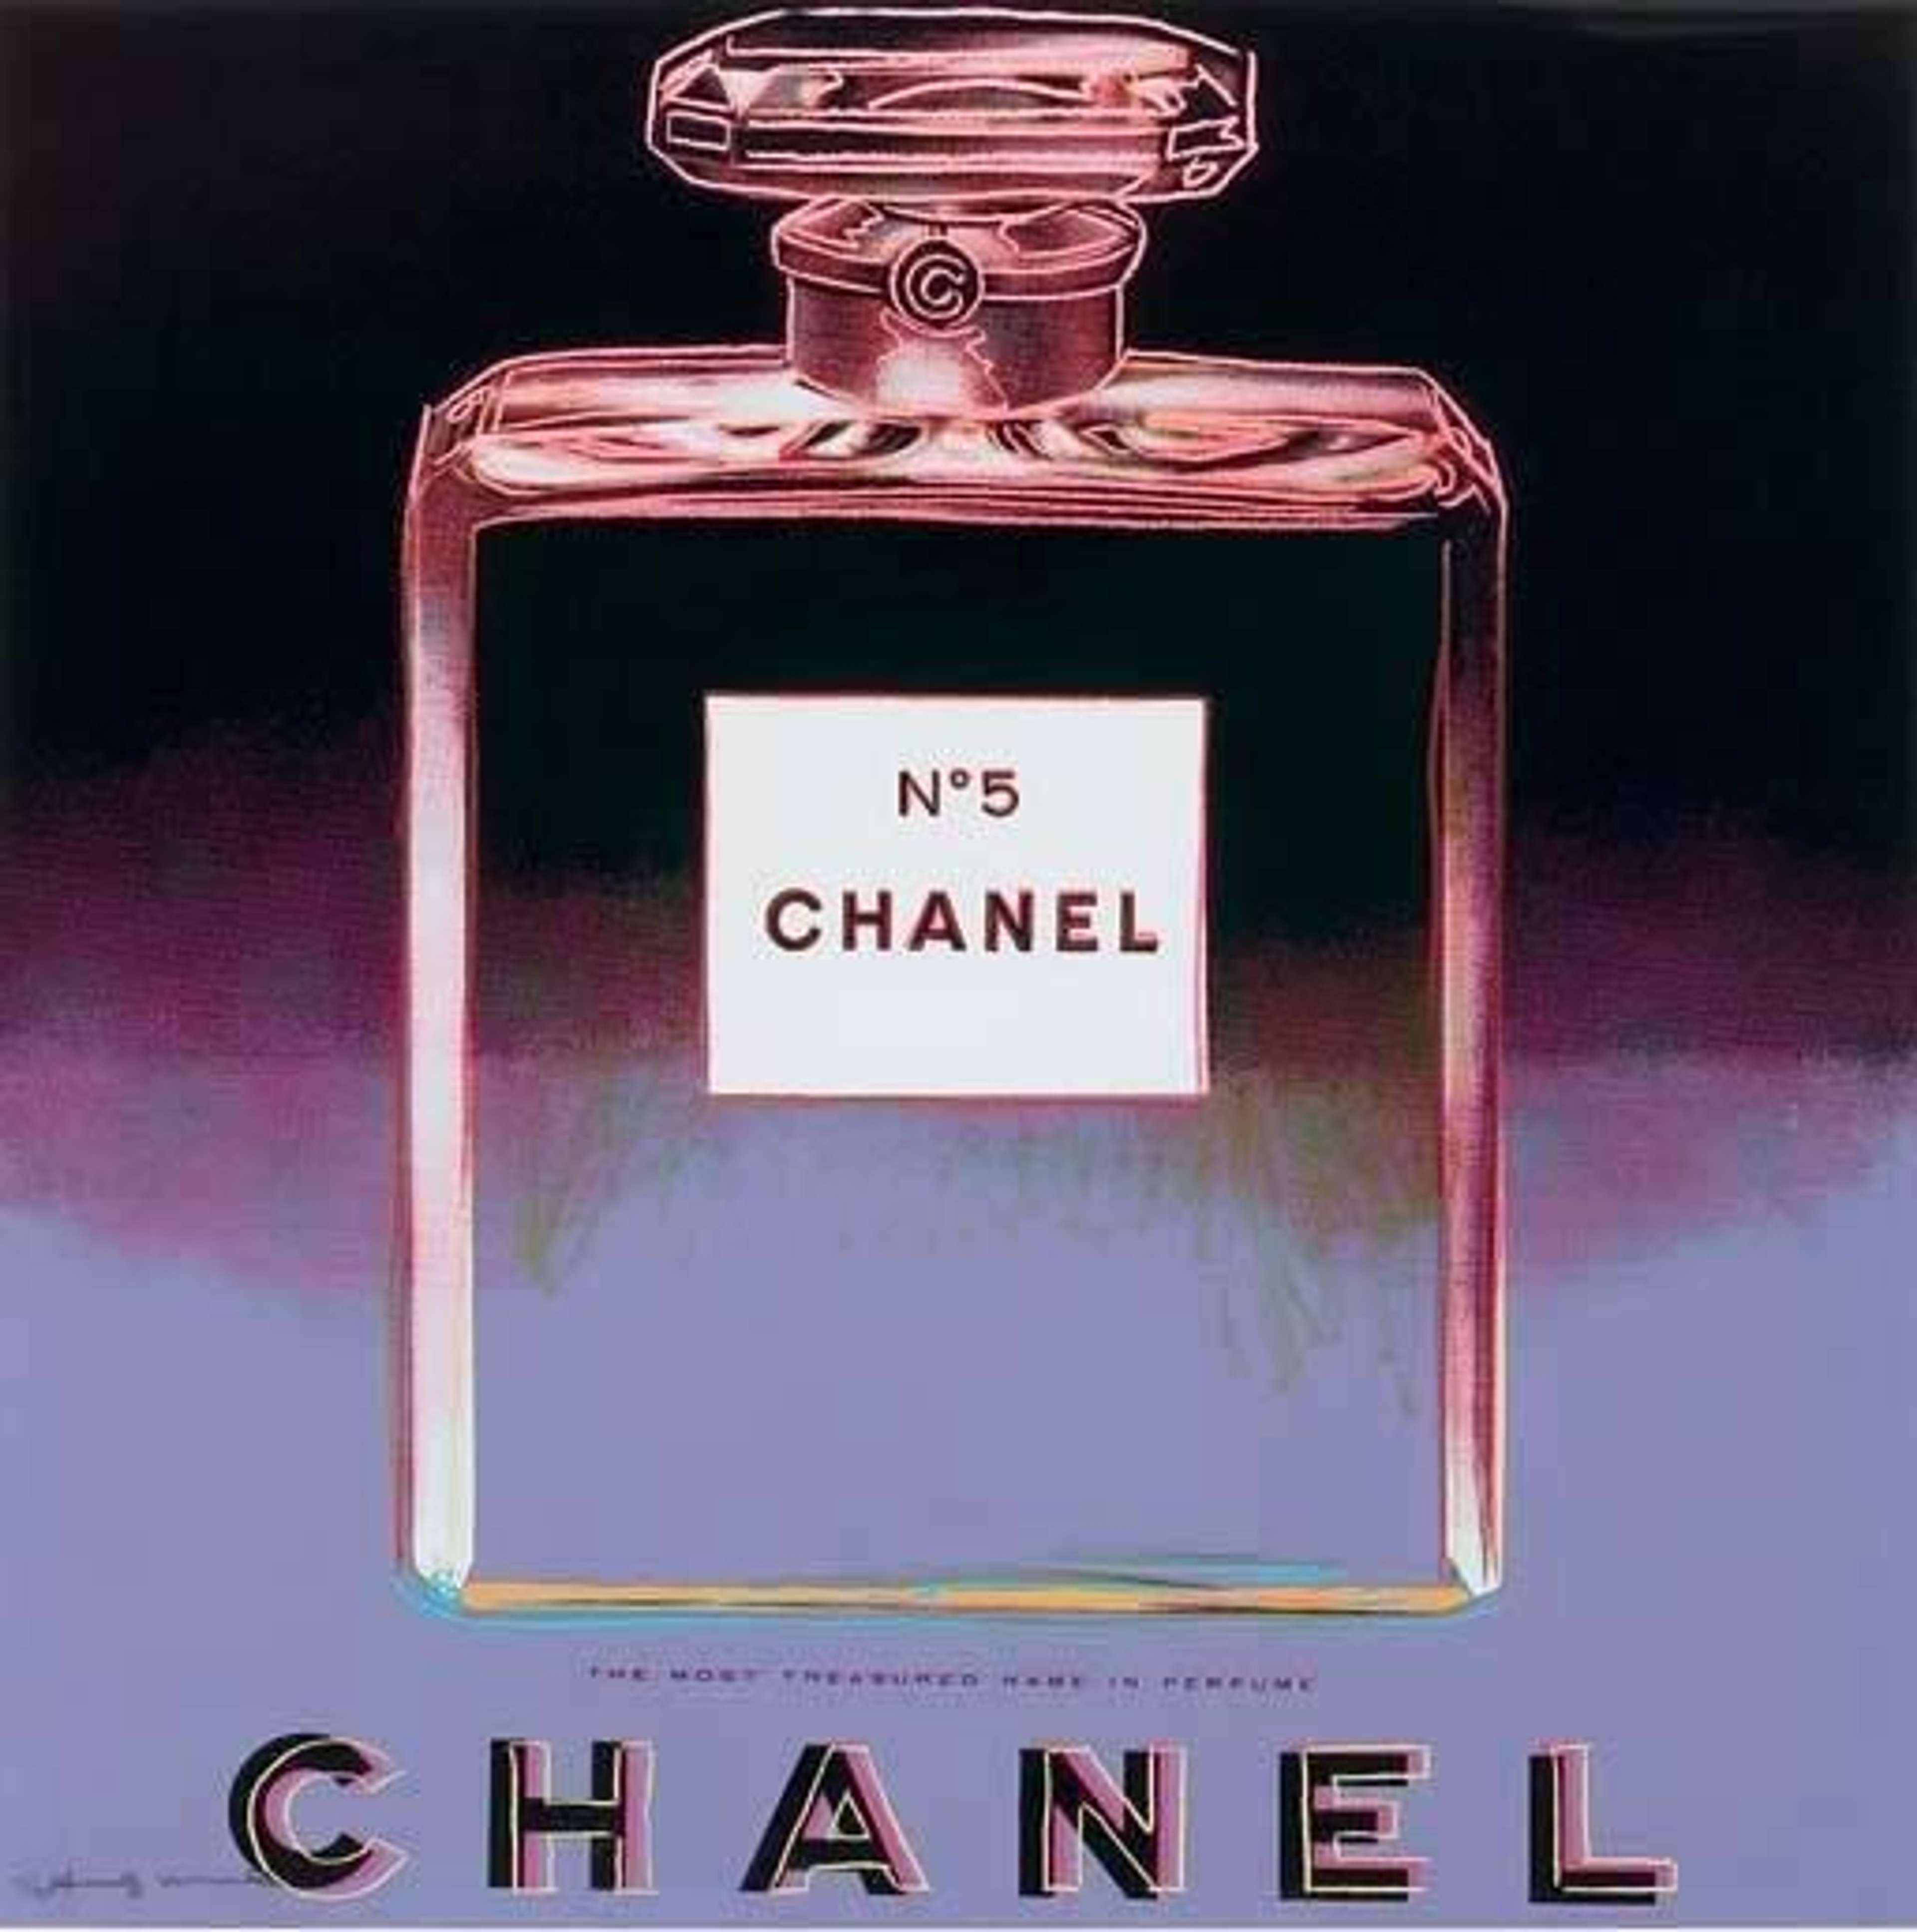 Chanel (F. & S. II.354) - Signed Print